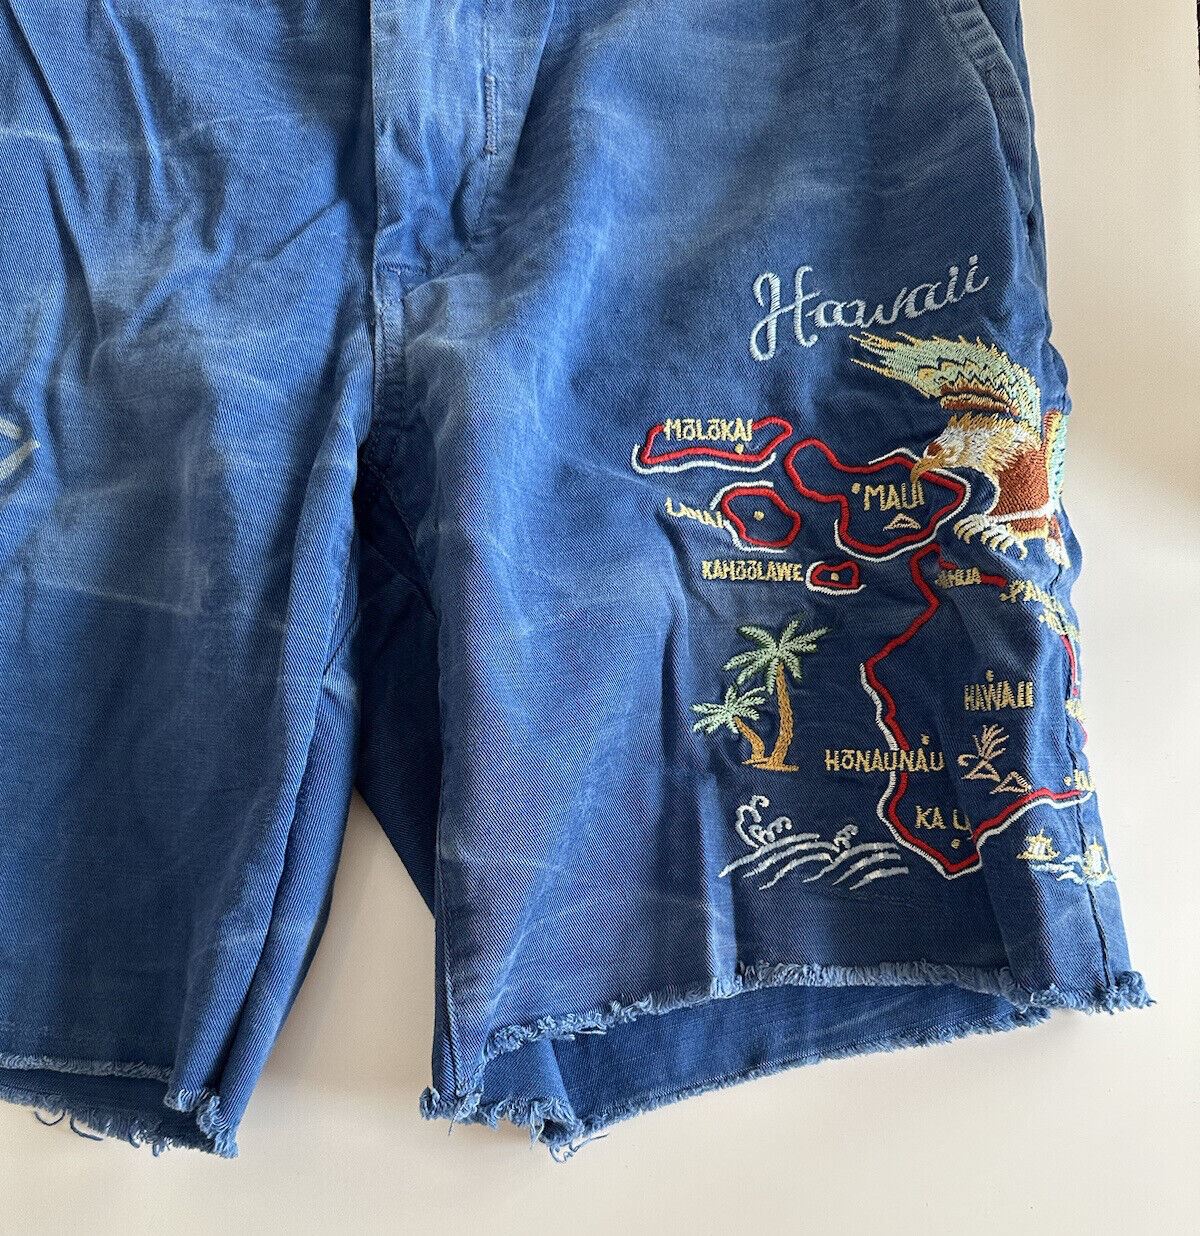 Polo Ralph Lauren Men's Blue Shorts Size 33 US